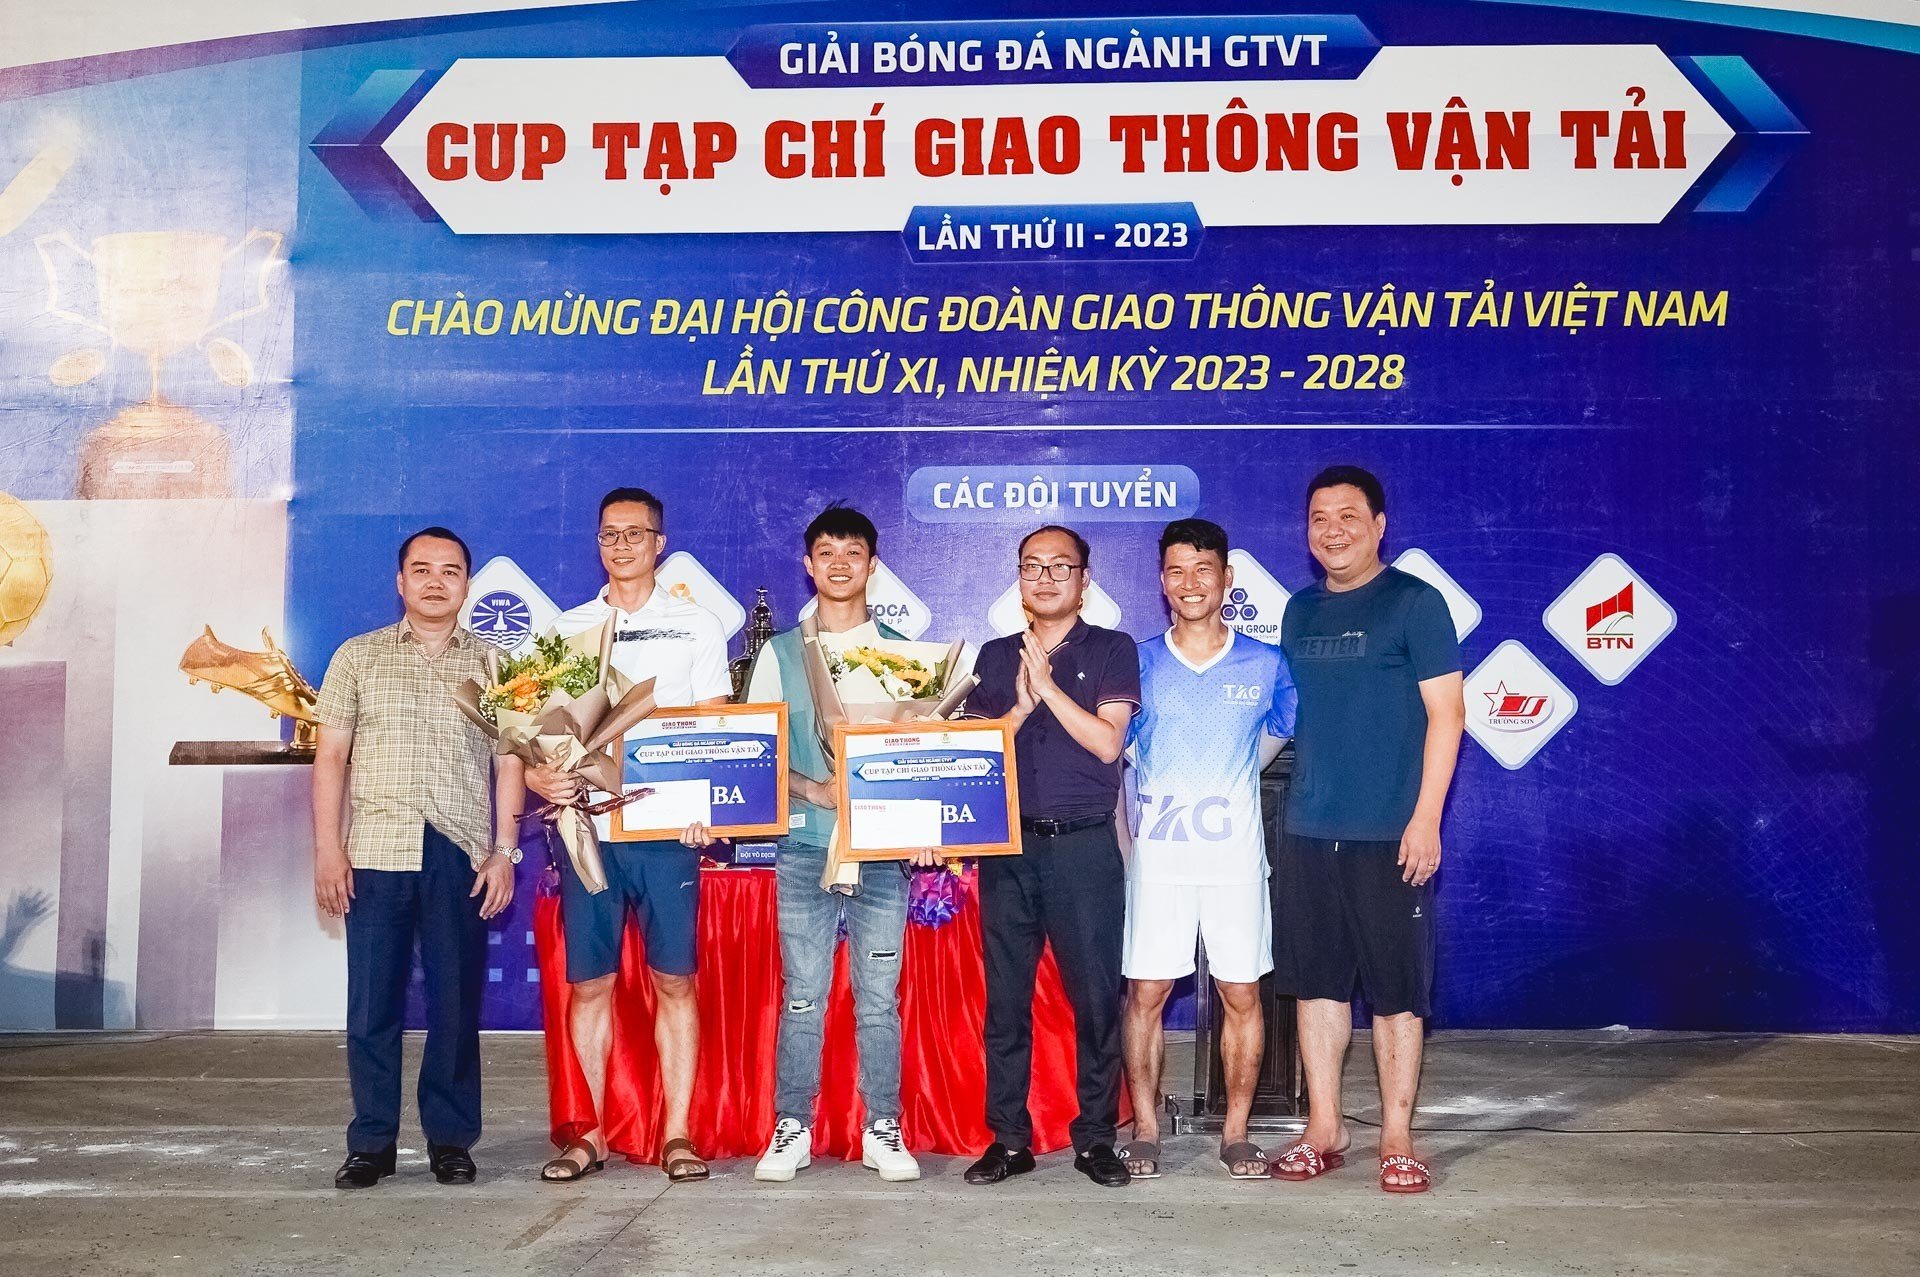 Cơ quan Bộ GTVT vô địch Giải bóng đá ngành GTVT Cup Tạp chí GTVT năm 2023 - Ảnh 6.